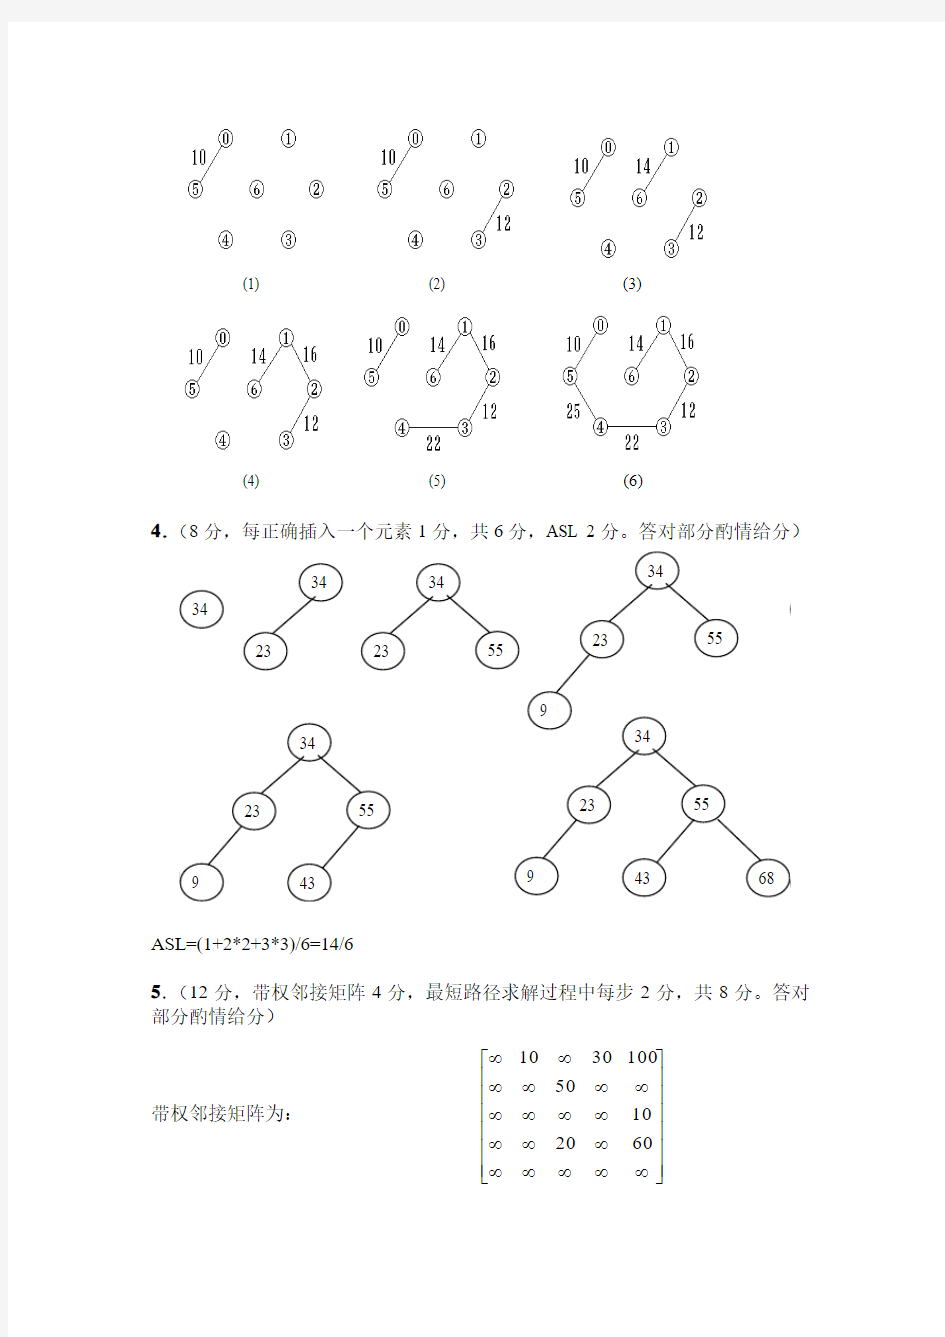 2013(1)数学信计11级-数据结构试卷B-答案 (1)